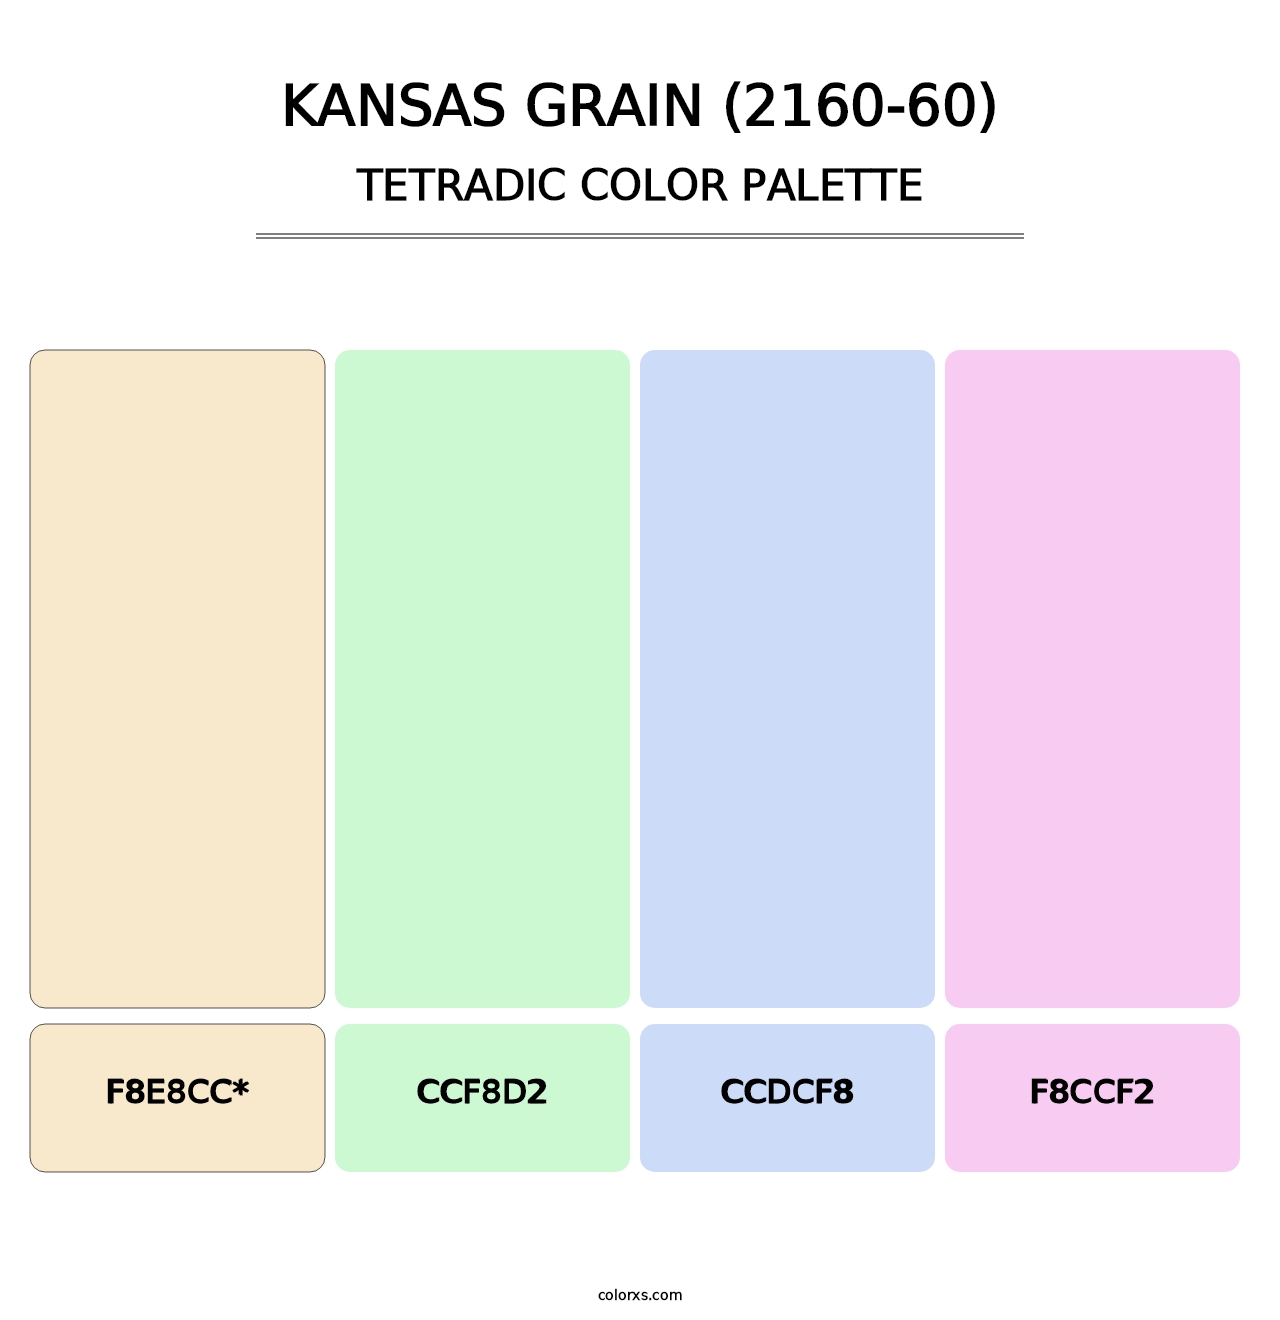 Kansas Grain (2160-60) - Tetradic Color Palette